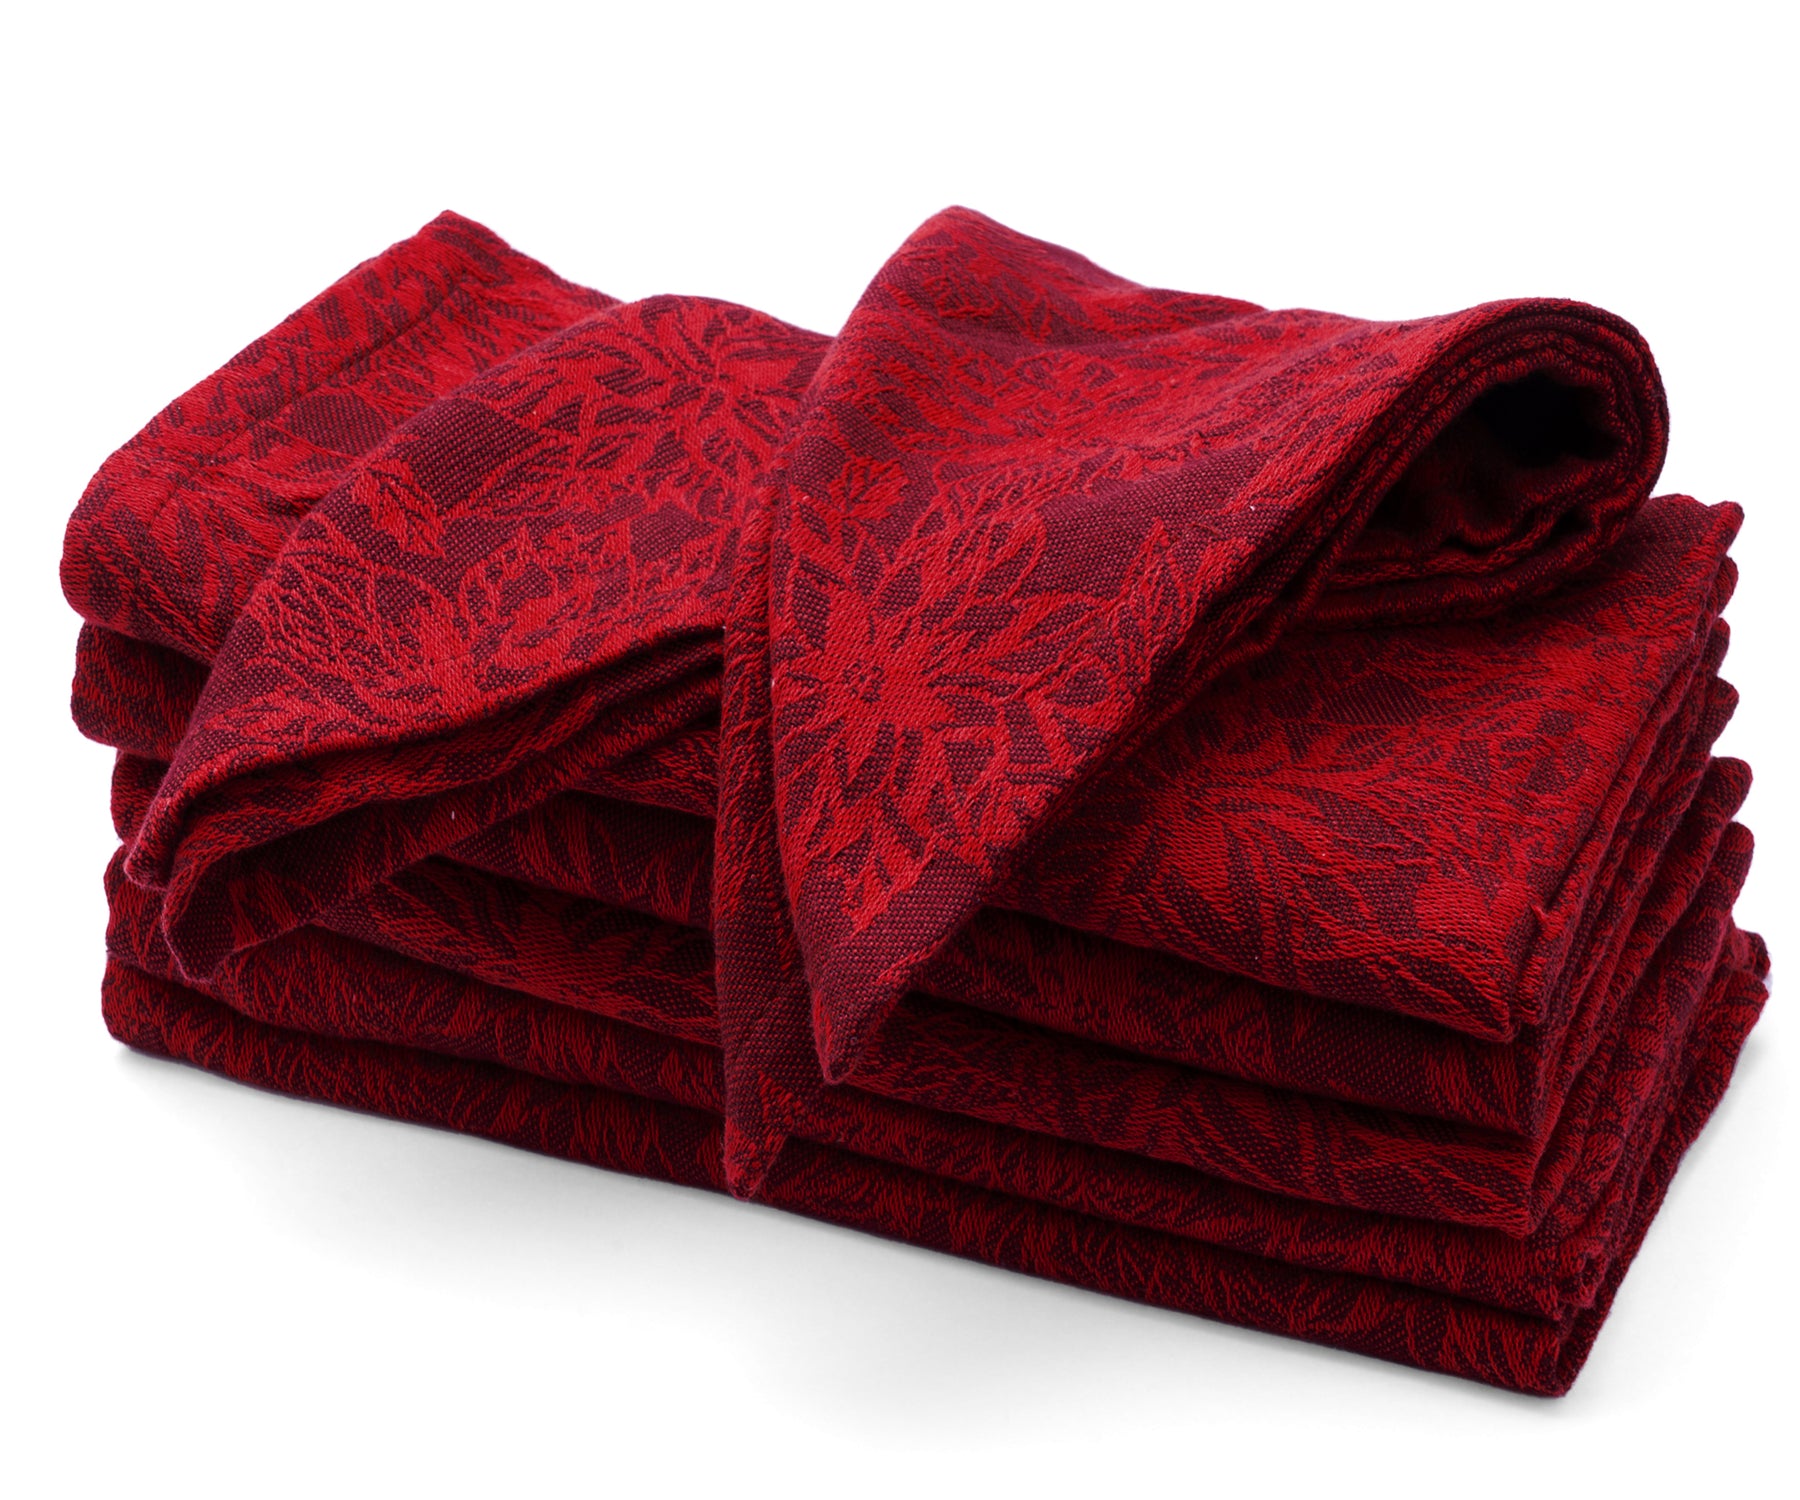 red napkins cloth set of 6 red napkins cloth bulk red napkins cloth linen red napkins cloth 6 red napkins cloth xmas